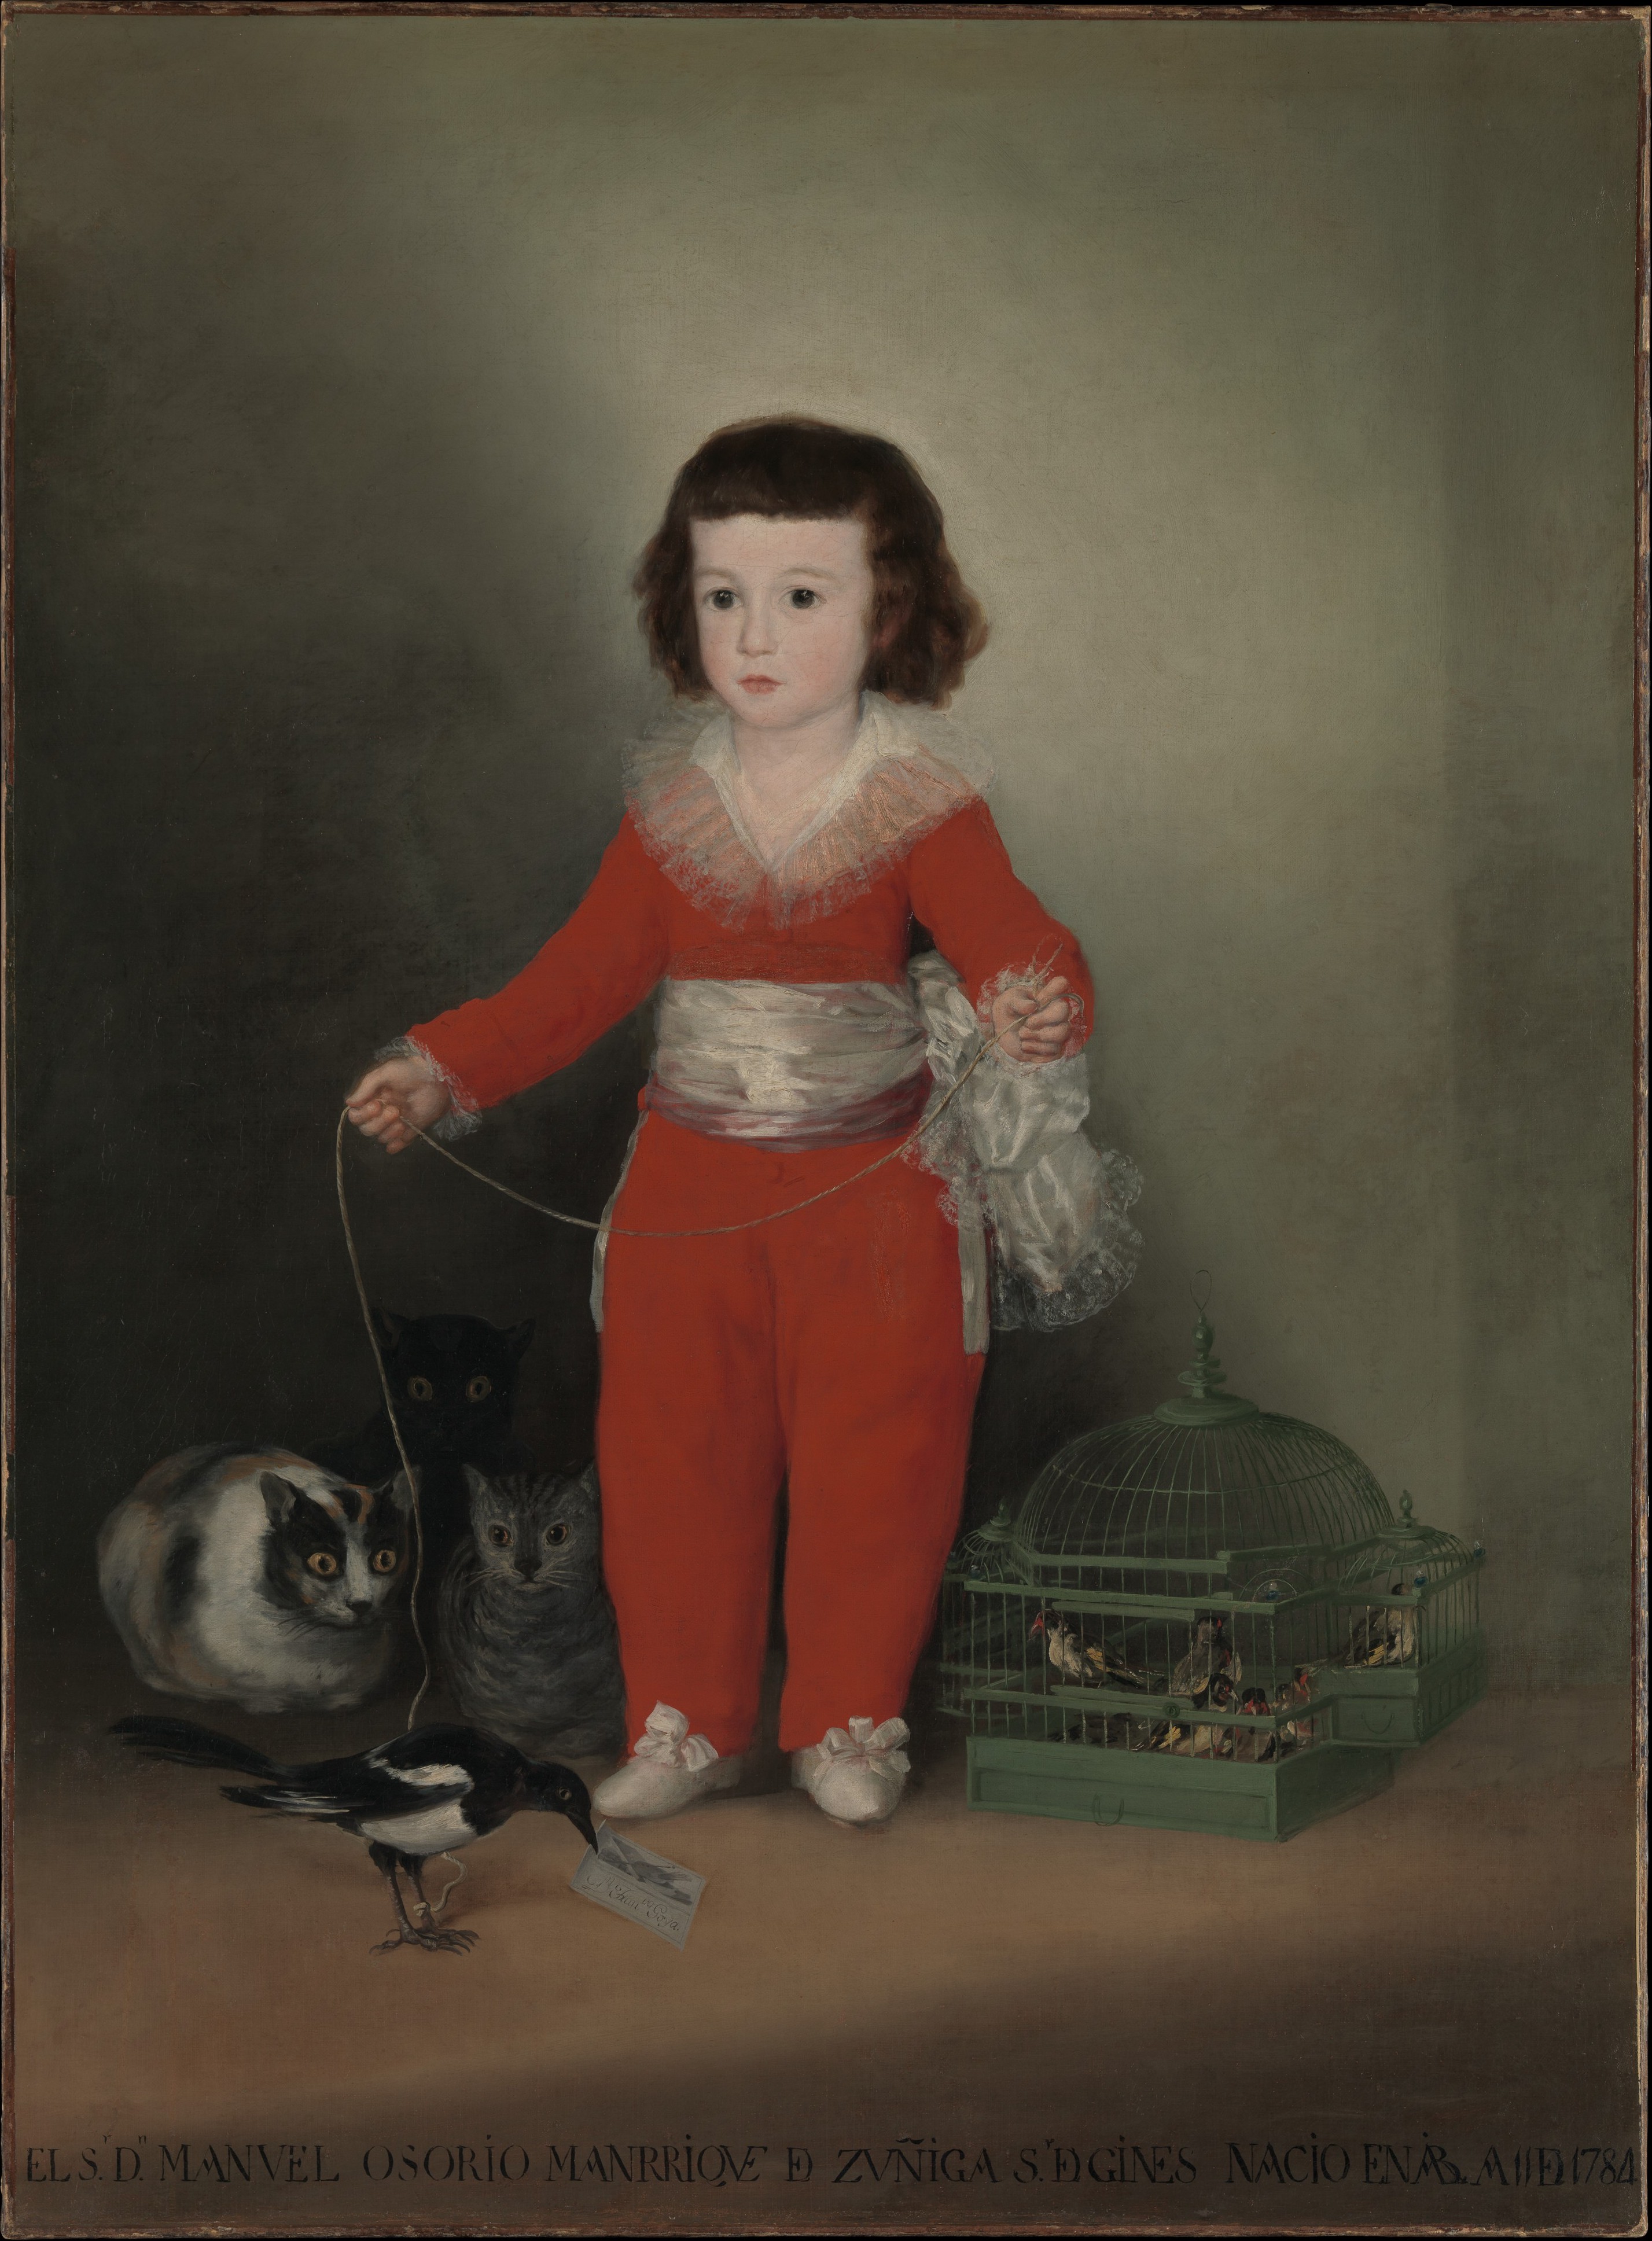 Manuel Osorio Manrique de Zuñiga by Francisco Goya - 1787–88 - 127 x 101.6 cm 